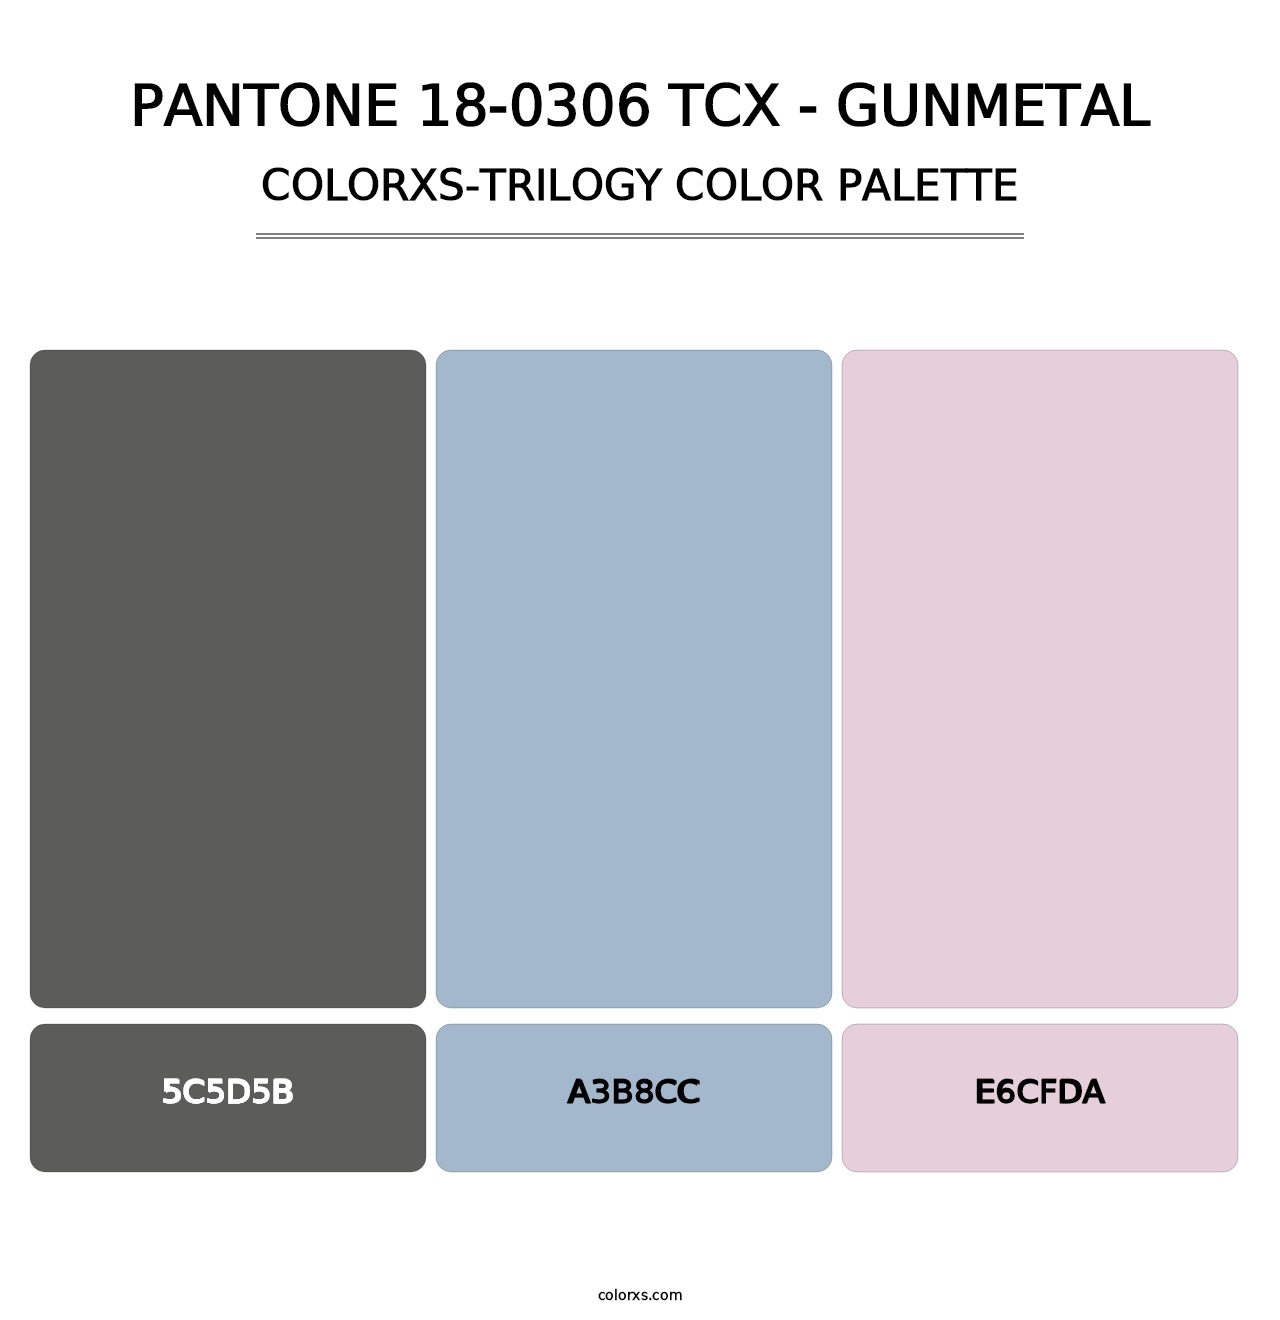 PANTONE 18-0306 TCX - Gunmetal - Colorxs Trilogy Palette